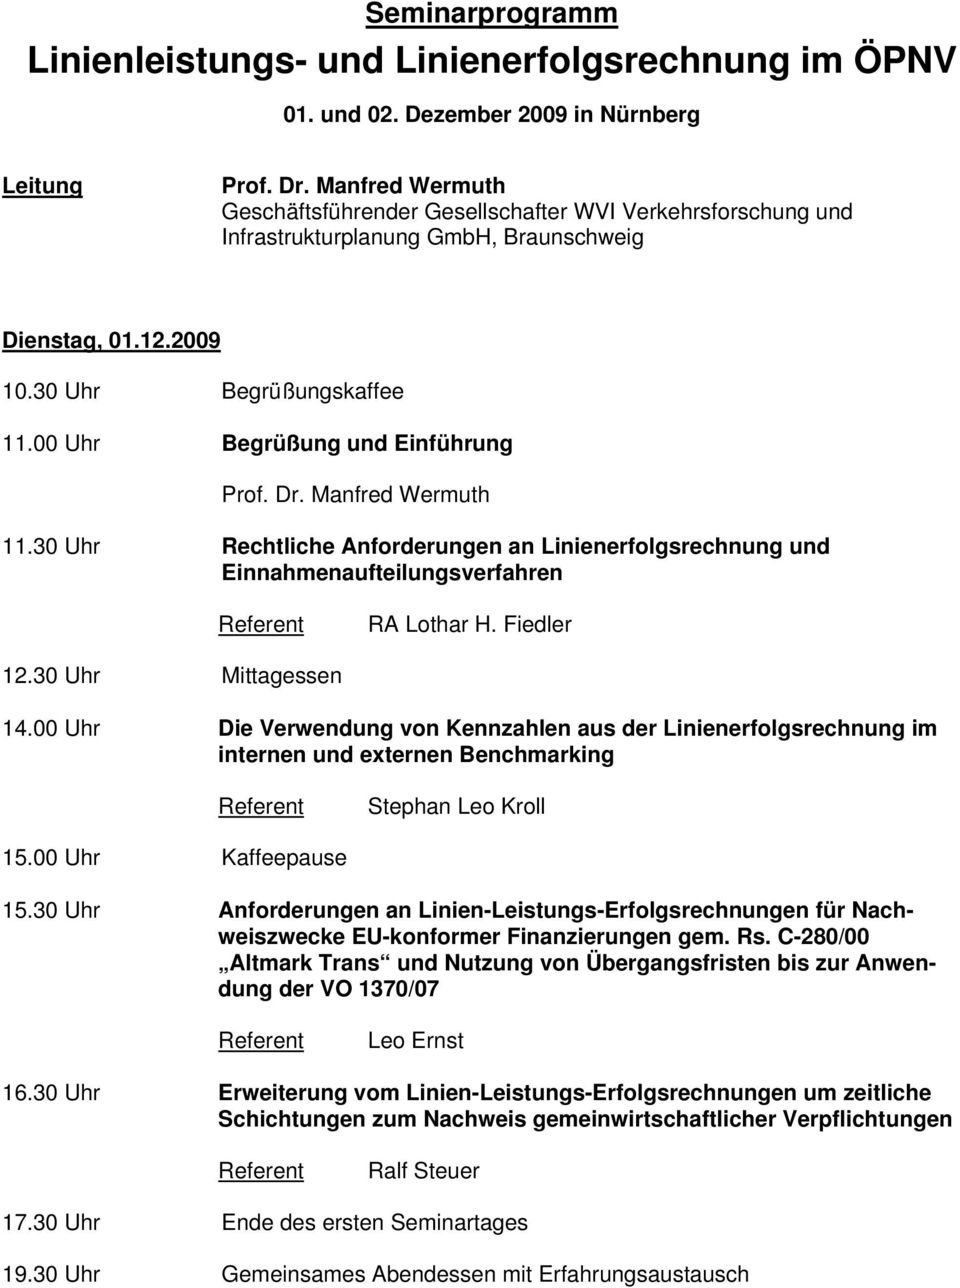 00 Uhr Begrüßung und Einführung 11.30 Uhr Rechtliche Anforderungen an Linienerfolgsrechnung und Einnahmenaufteilungsverfahren RA Lothar H. Fiedler 12.30 Uhr Mittagessen 14.